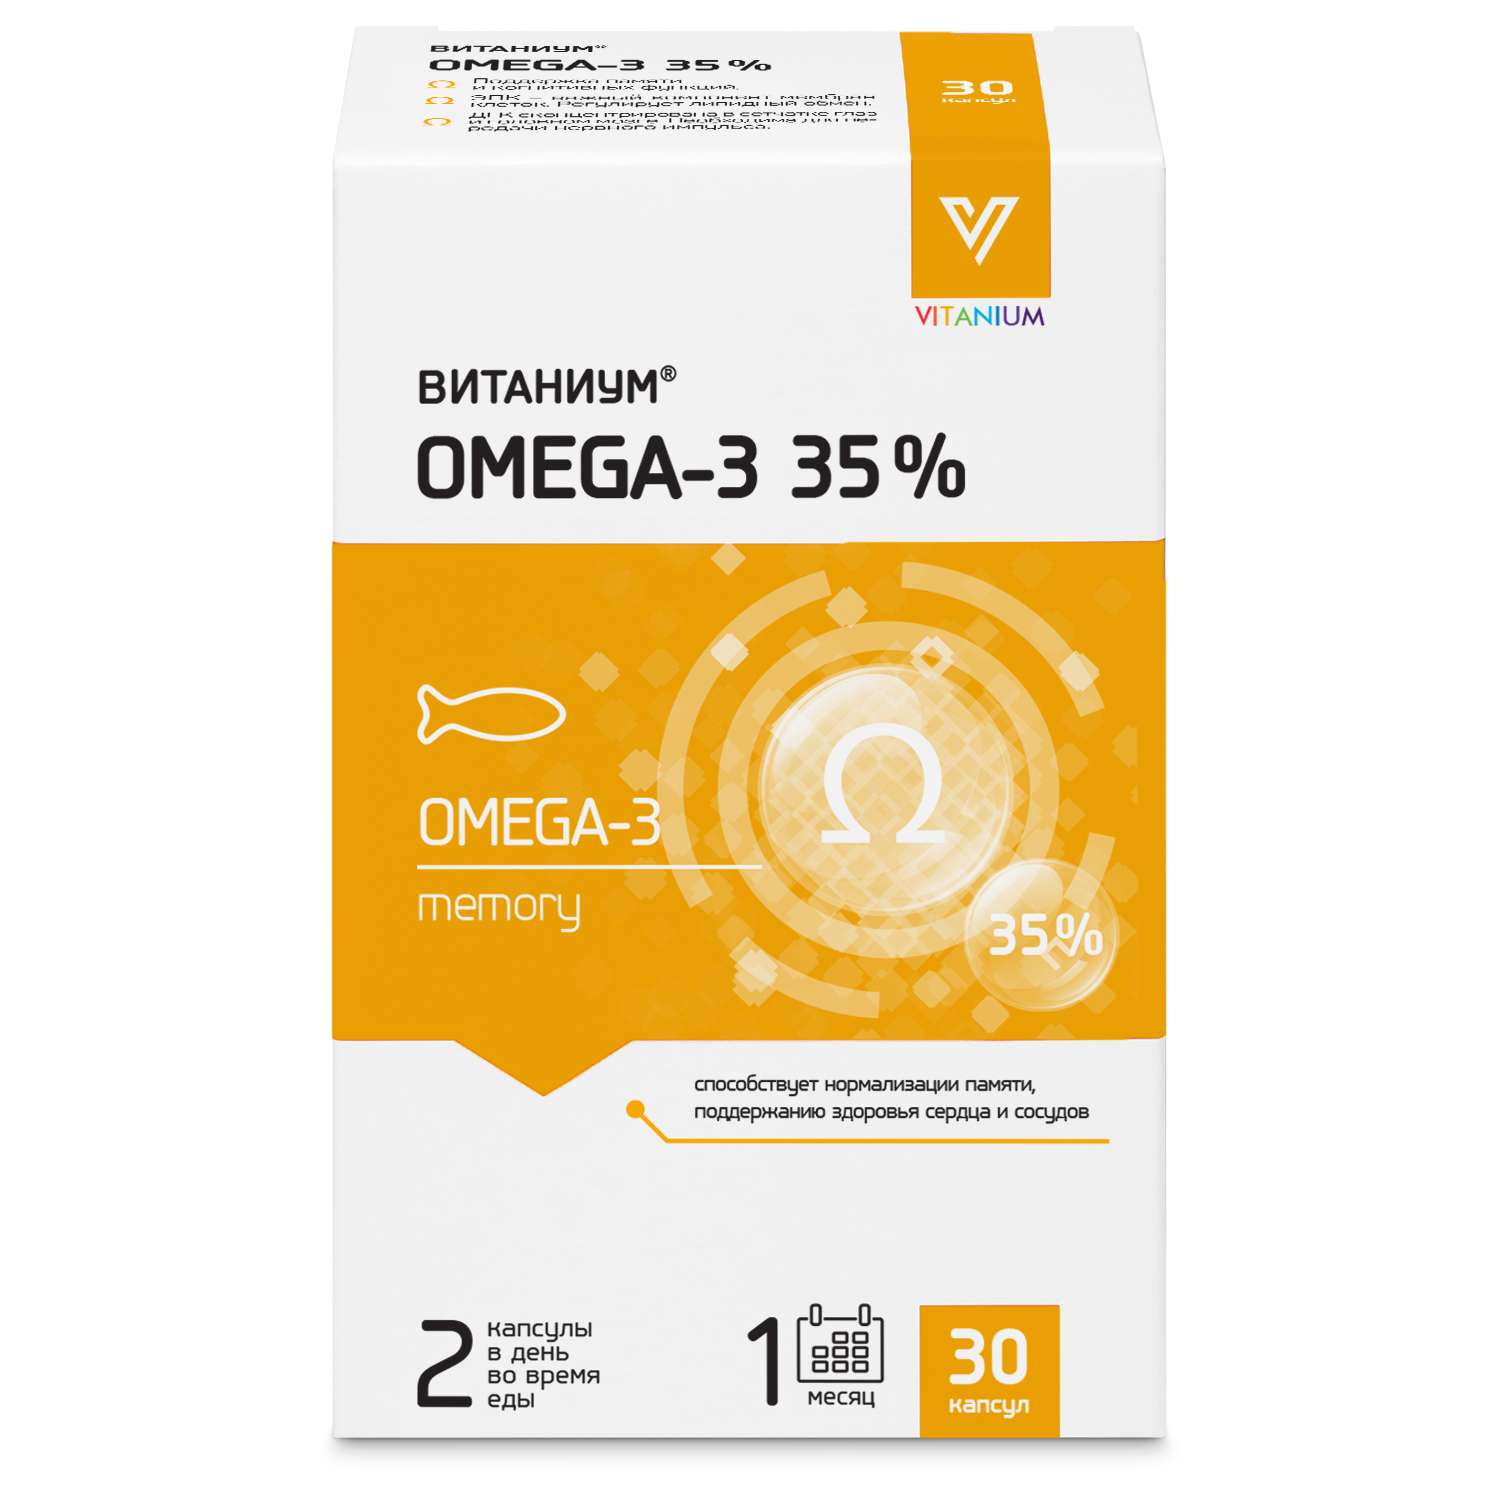 Биологически активная добавка Витаниум Omega 3 35% 30капсул - фото 1